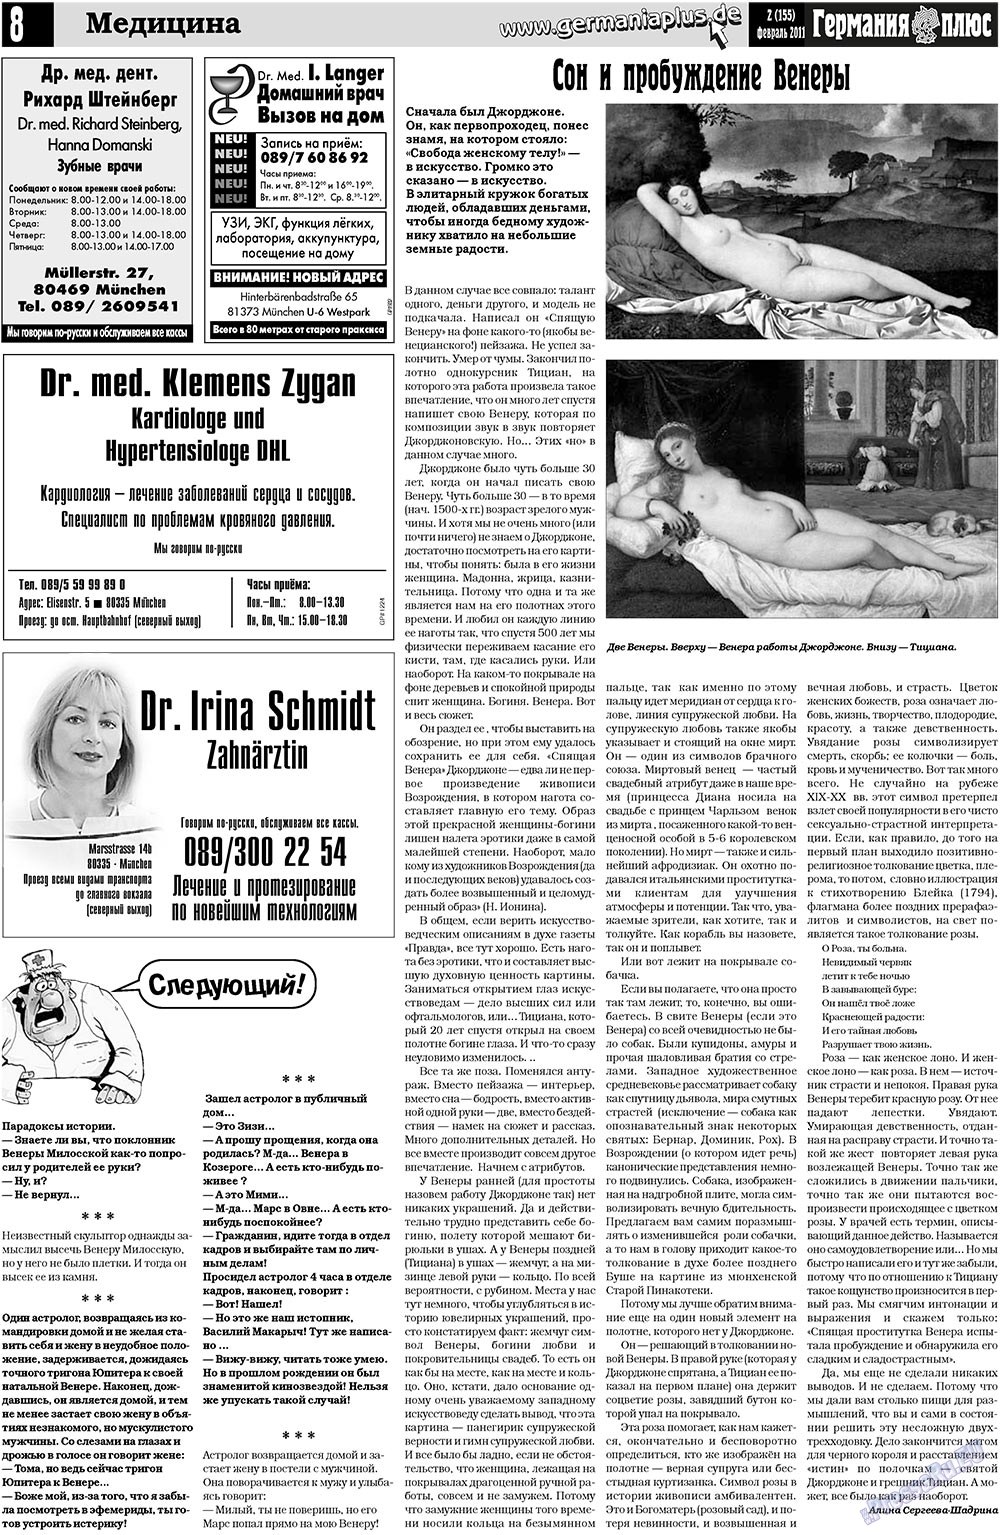 Германия плюс, газета. 2011 №2 стр.8